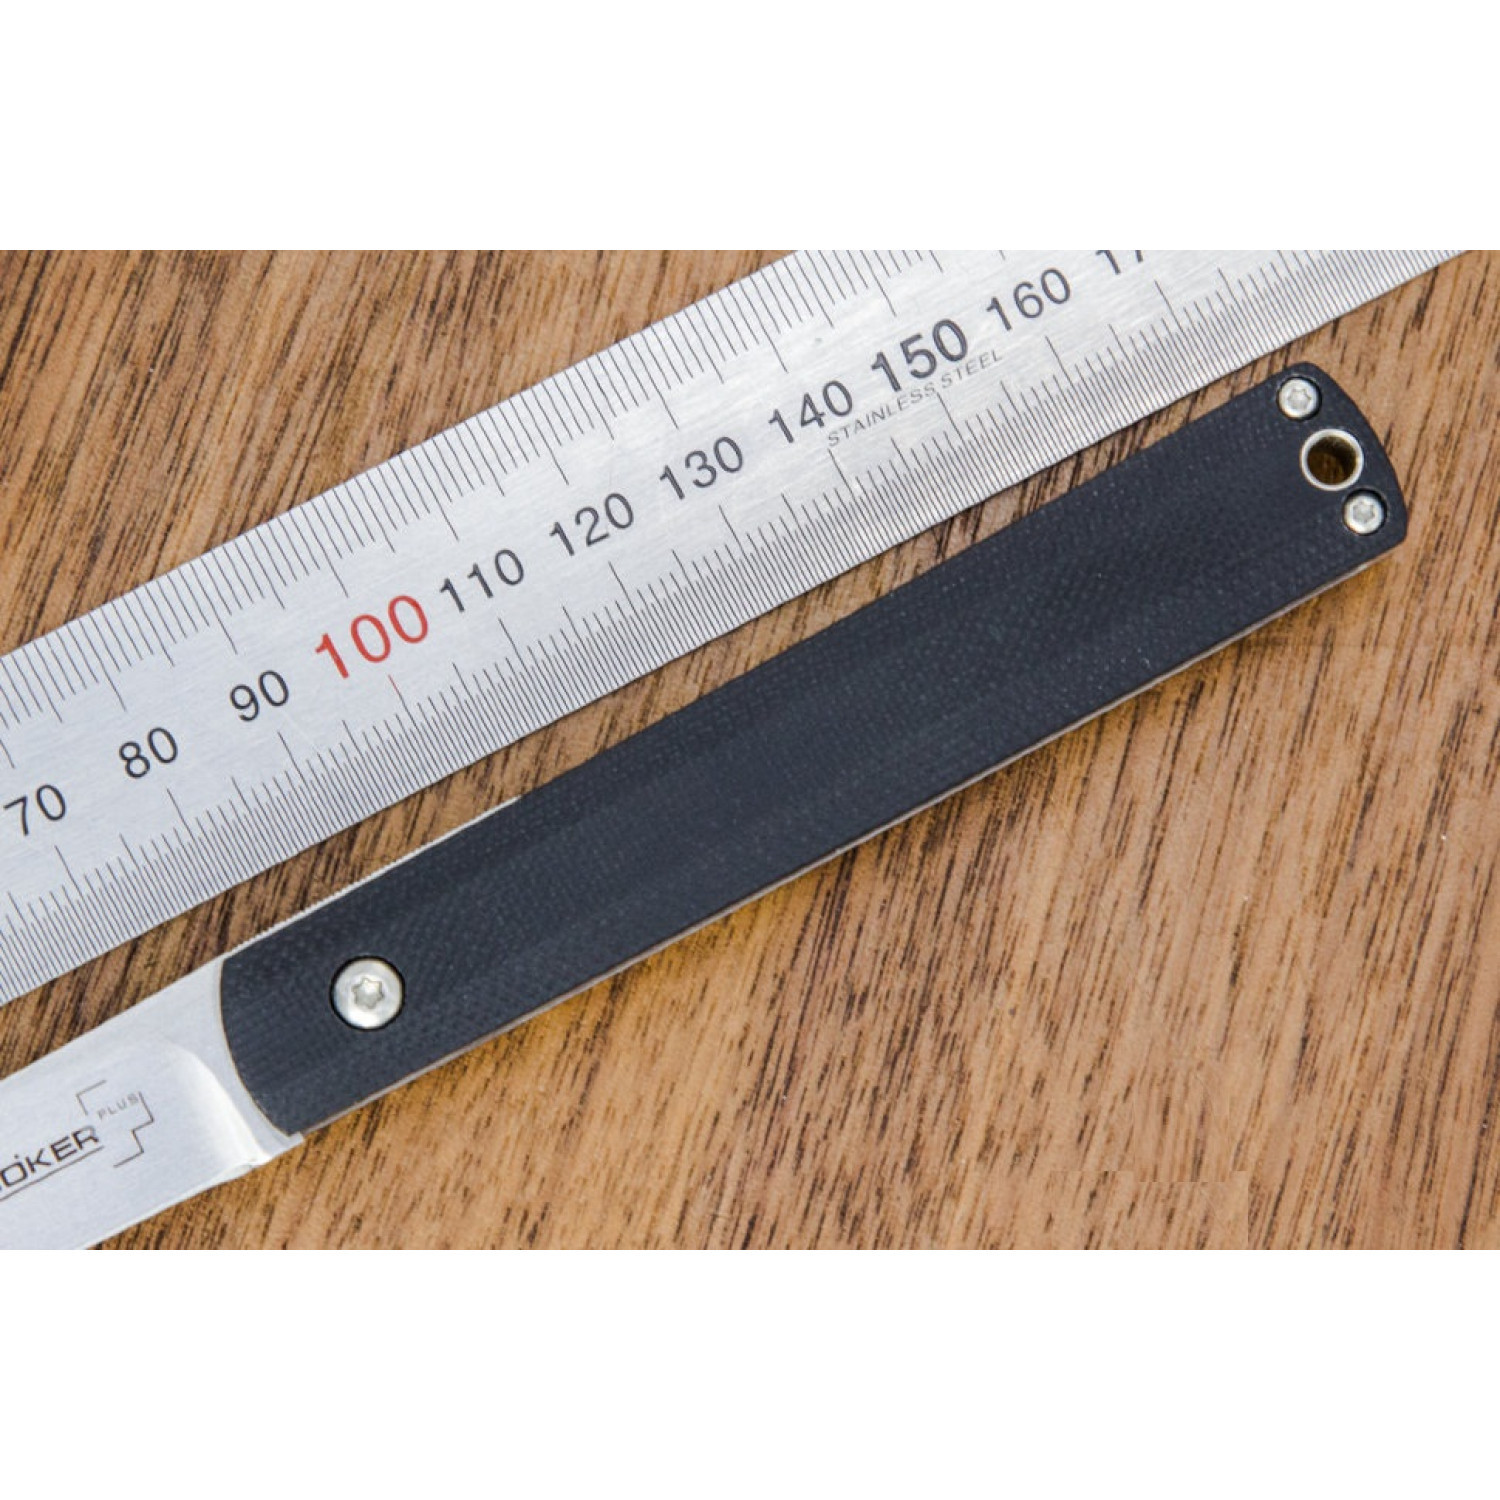 Складной нож Wasabi G10 - Boker Plus 01BO630, лезвие сталь 440C Satin, рукоять стеклотекстолит G-10, чёрный - фото 3